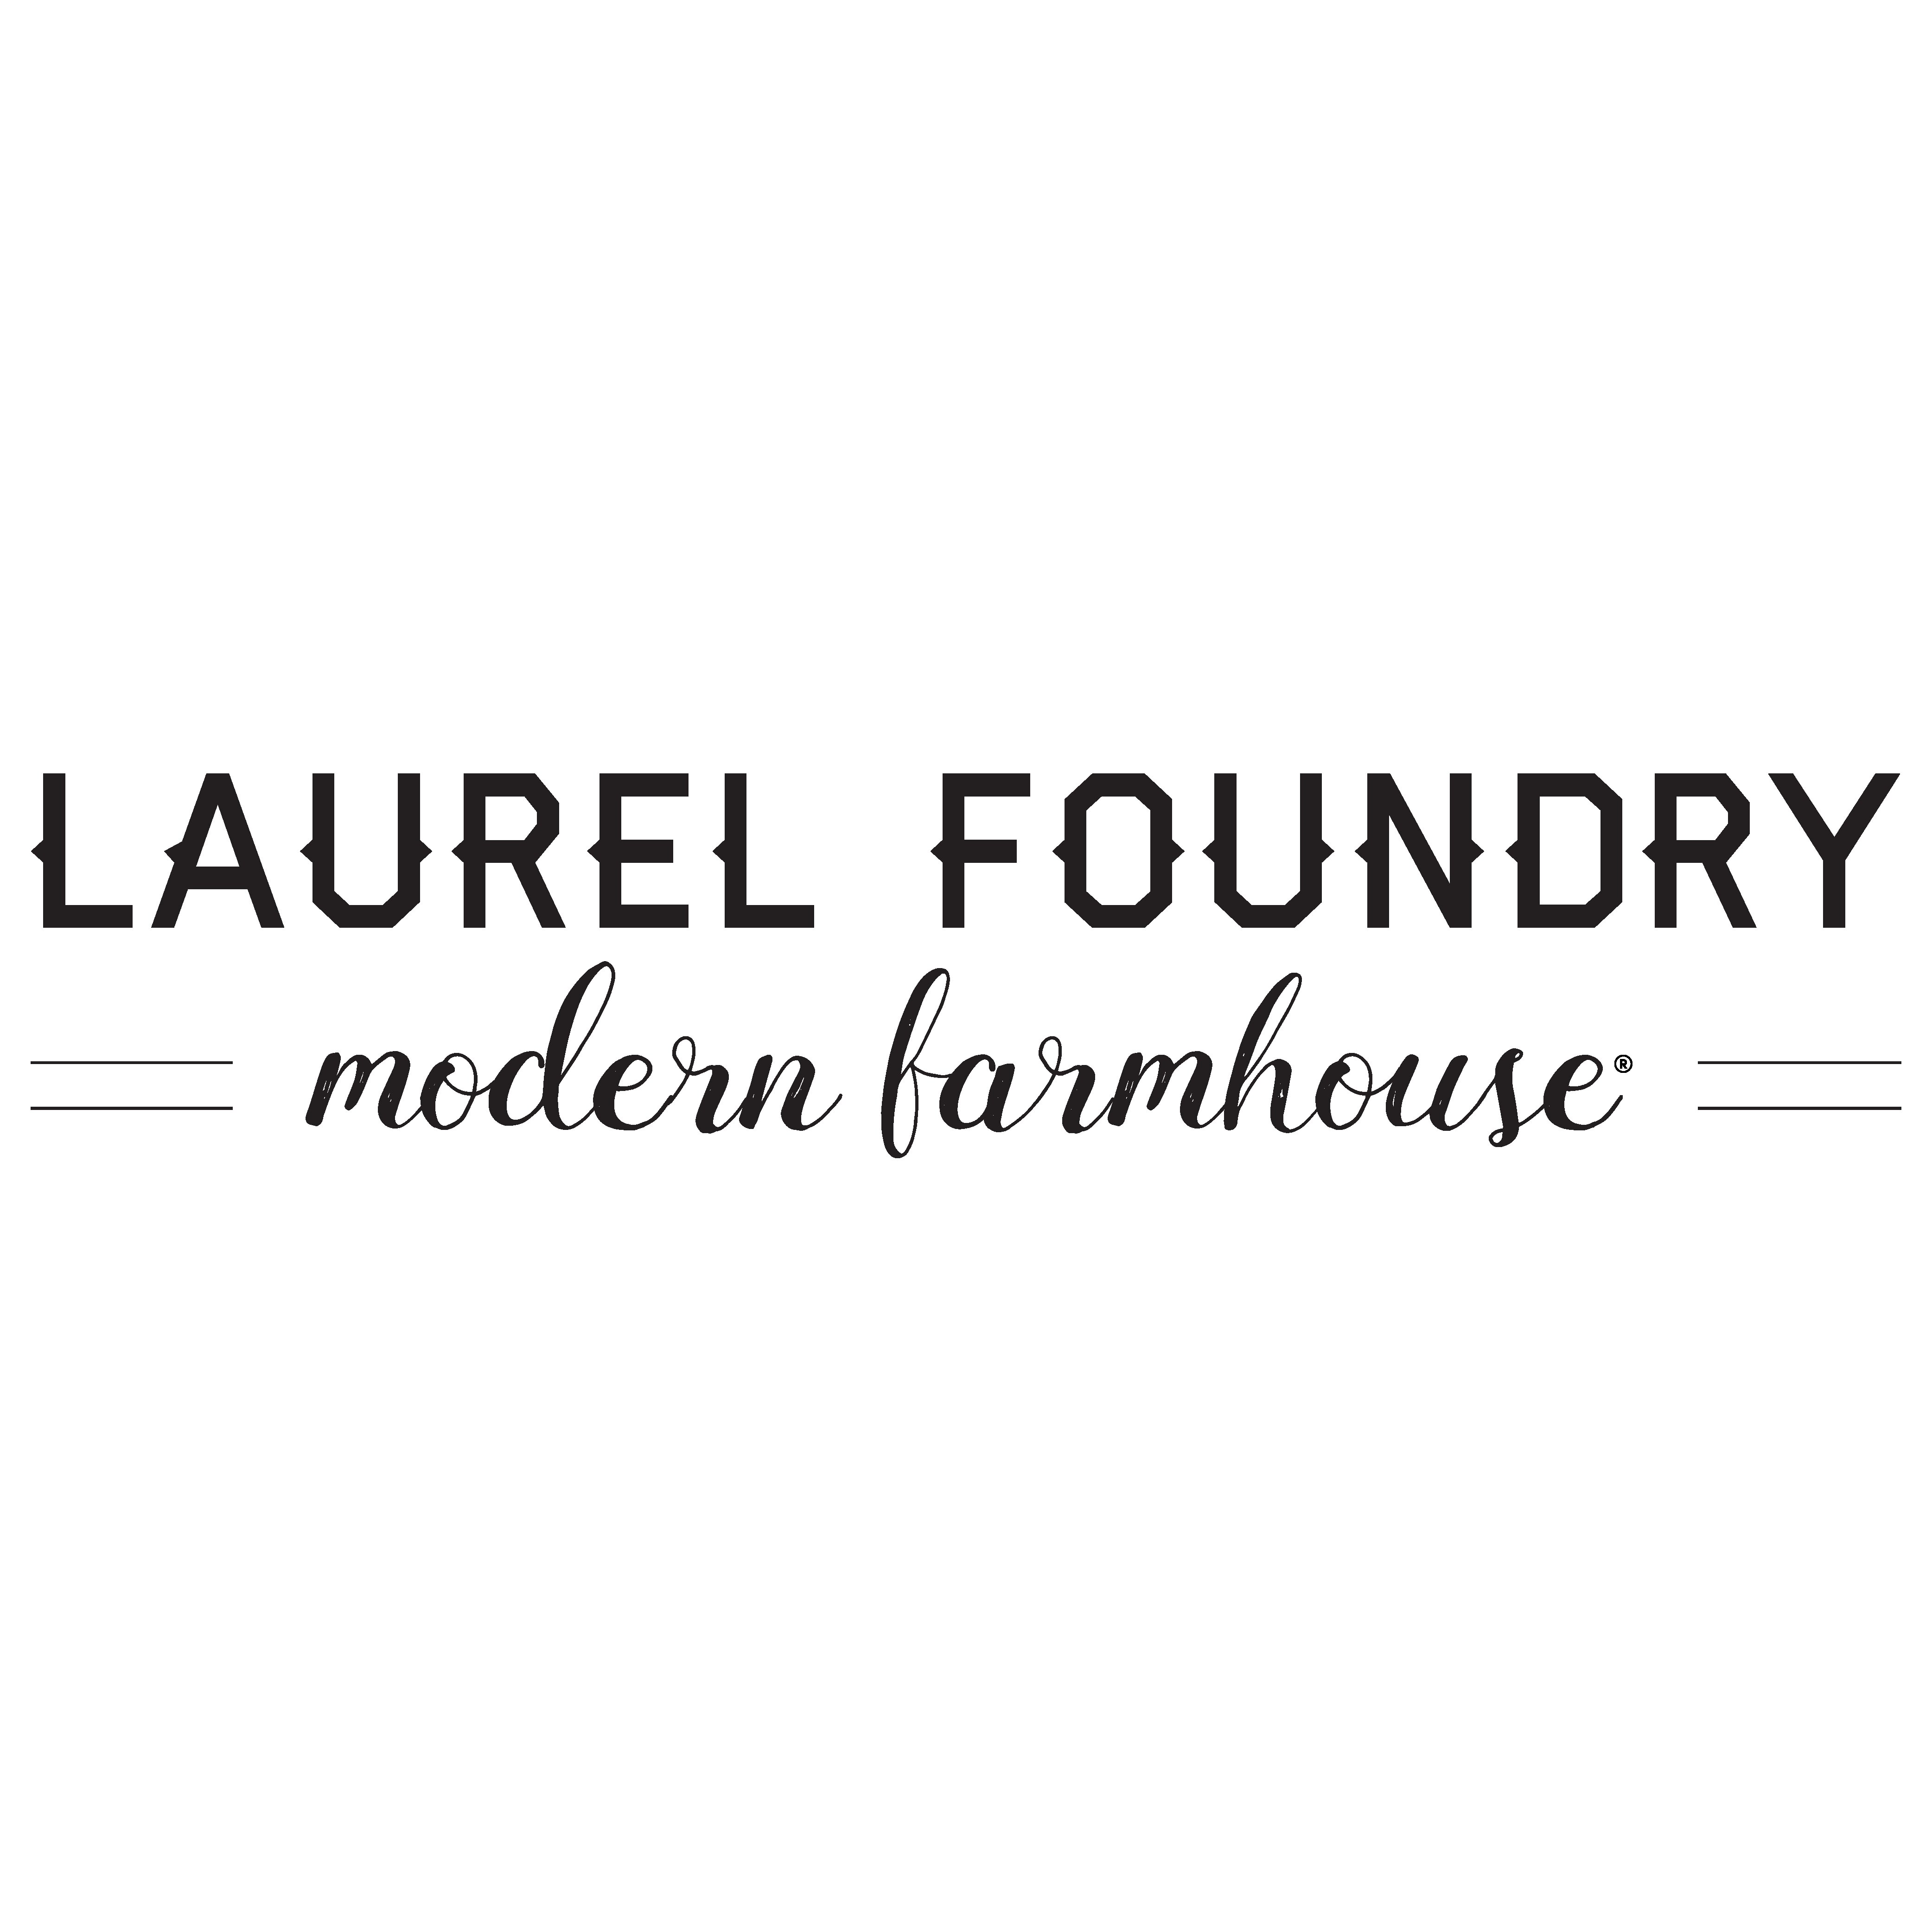 Laurel Foundry Modern Farmhouse Jair Upholstered King Louis Back